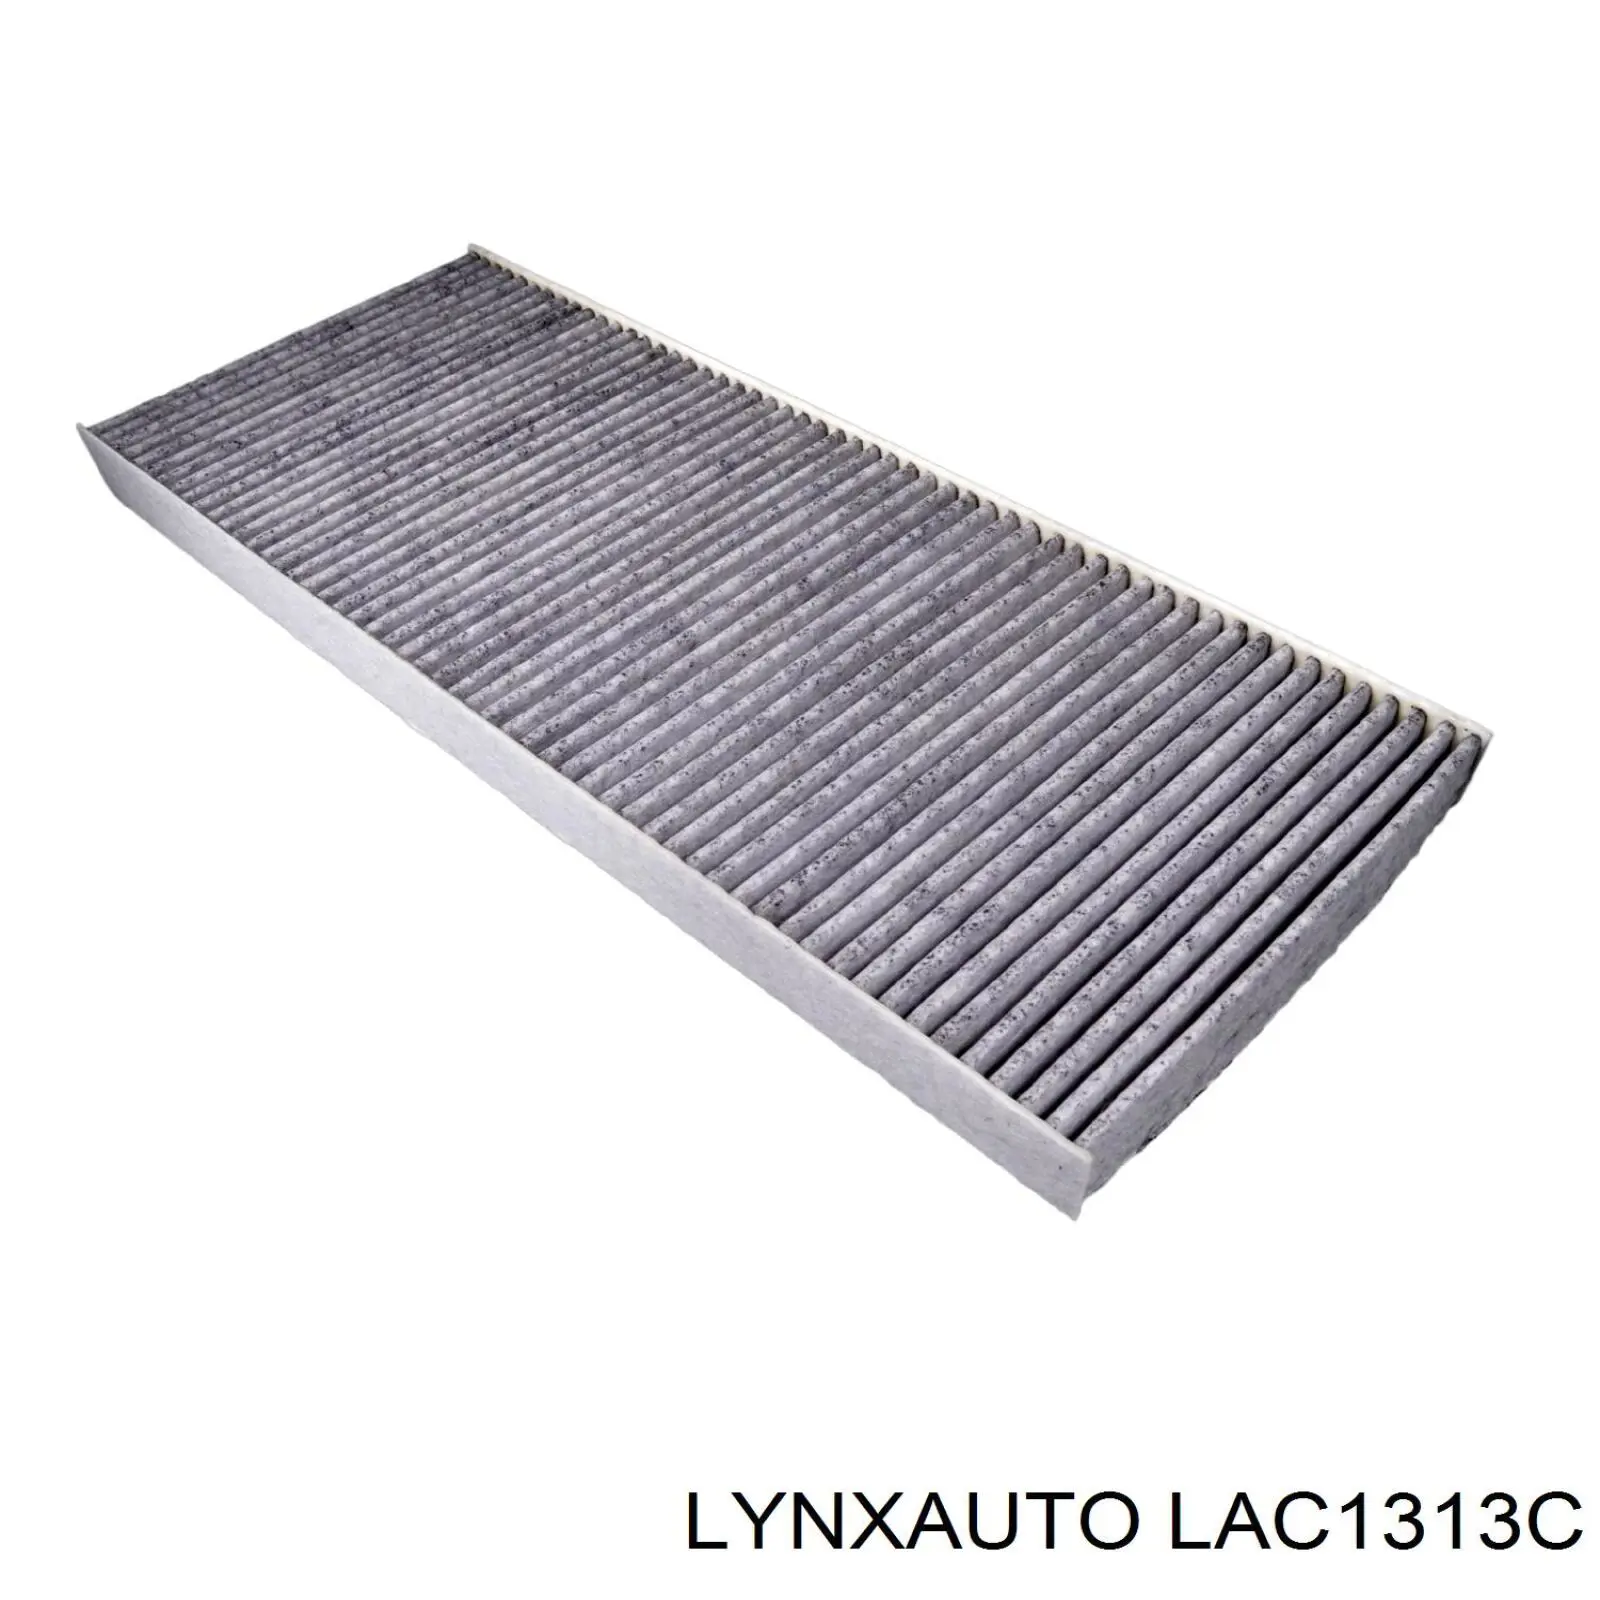 LAC1313C Lynxauto filtro habitáculo